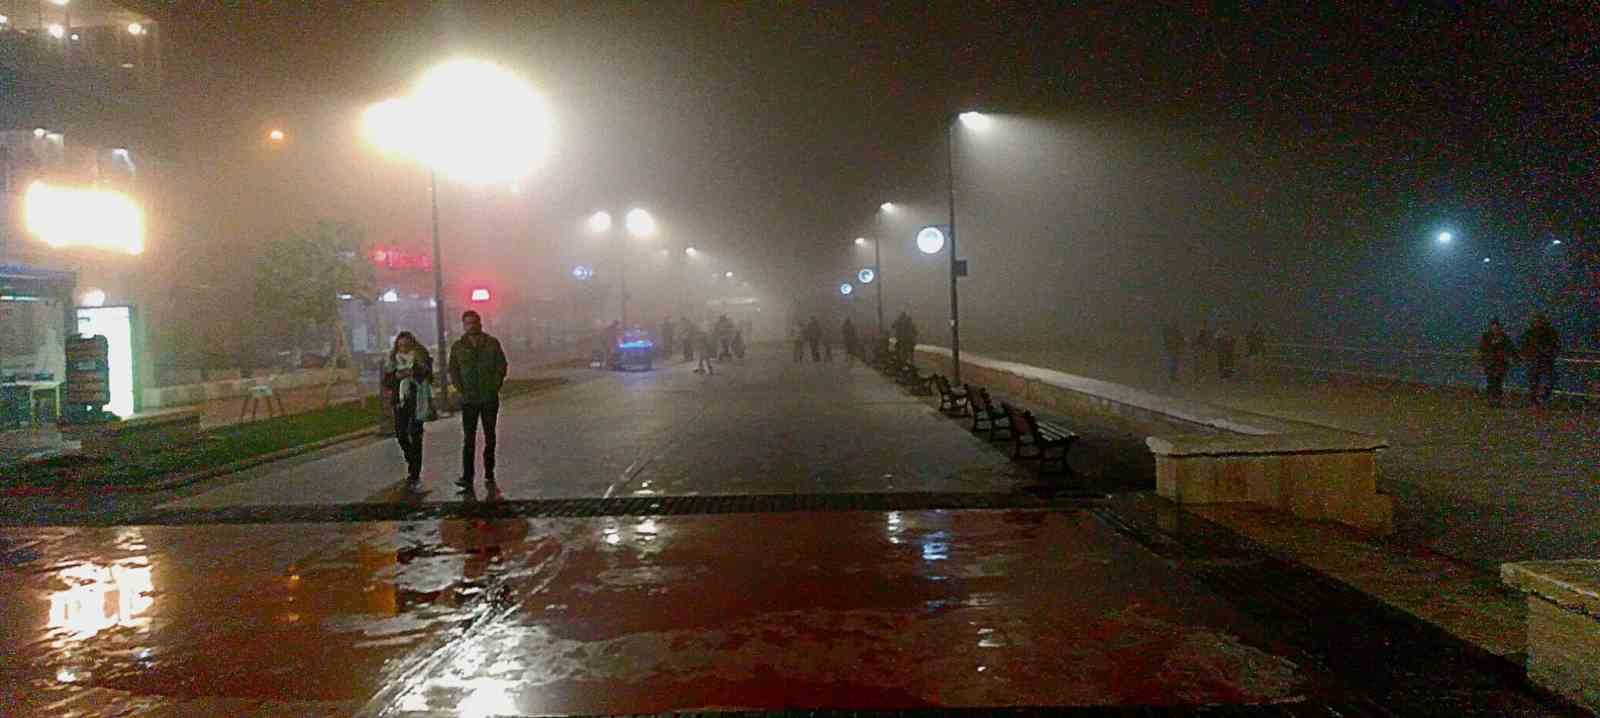 Mudanya’da yoğun sis etkili oldu, göz gözü görmez hale geldi